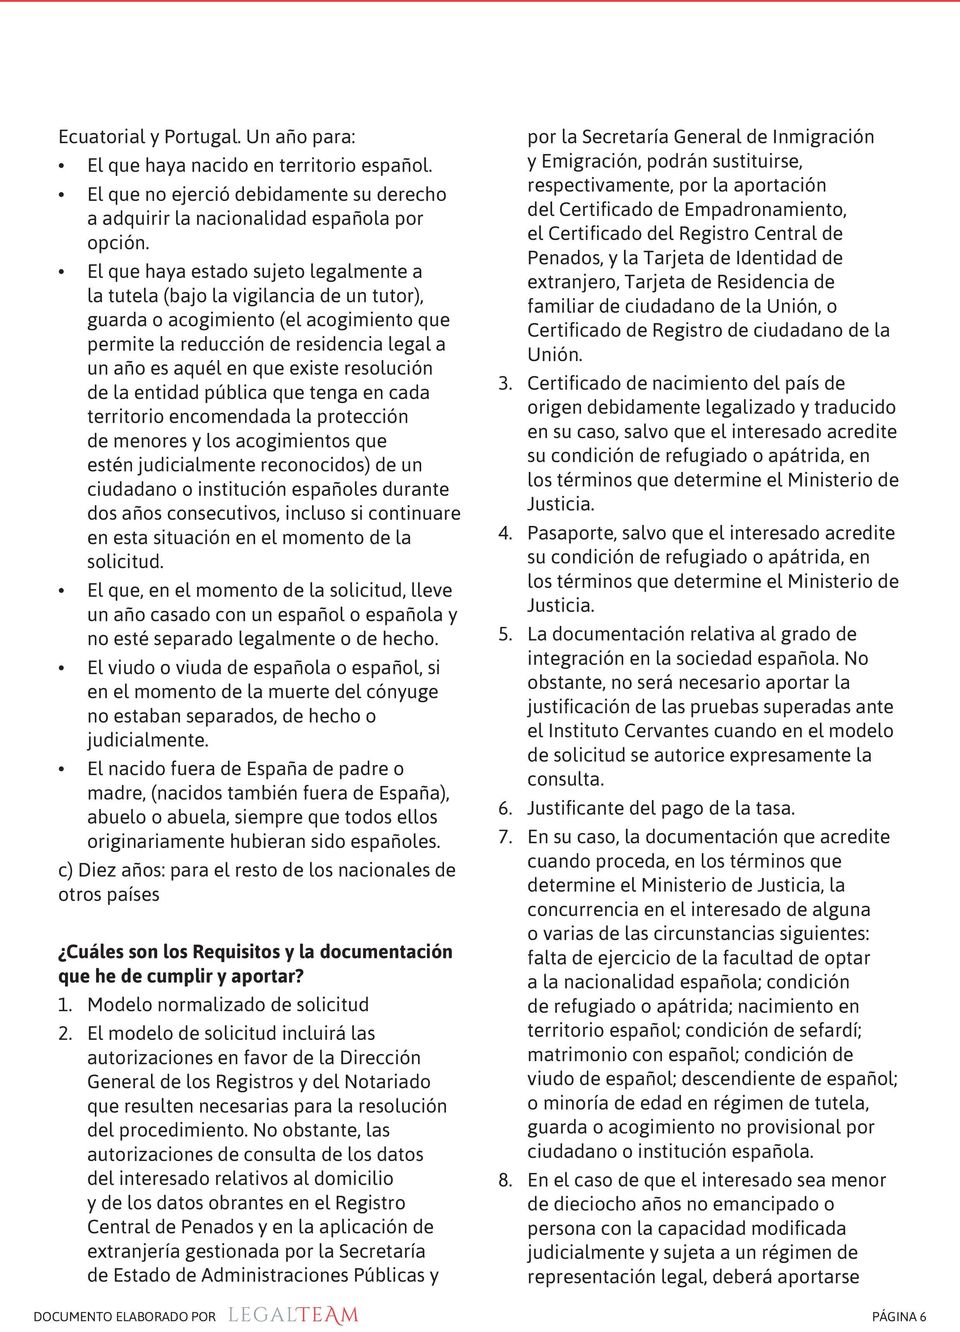 resolución de la entidad pública que tenga en cada territorio encomendada la protección de menores y los acogimientos que estén judicialmente reconocidos) de un ciudadano o institución españoles